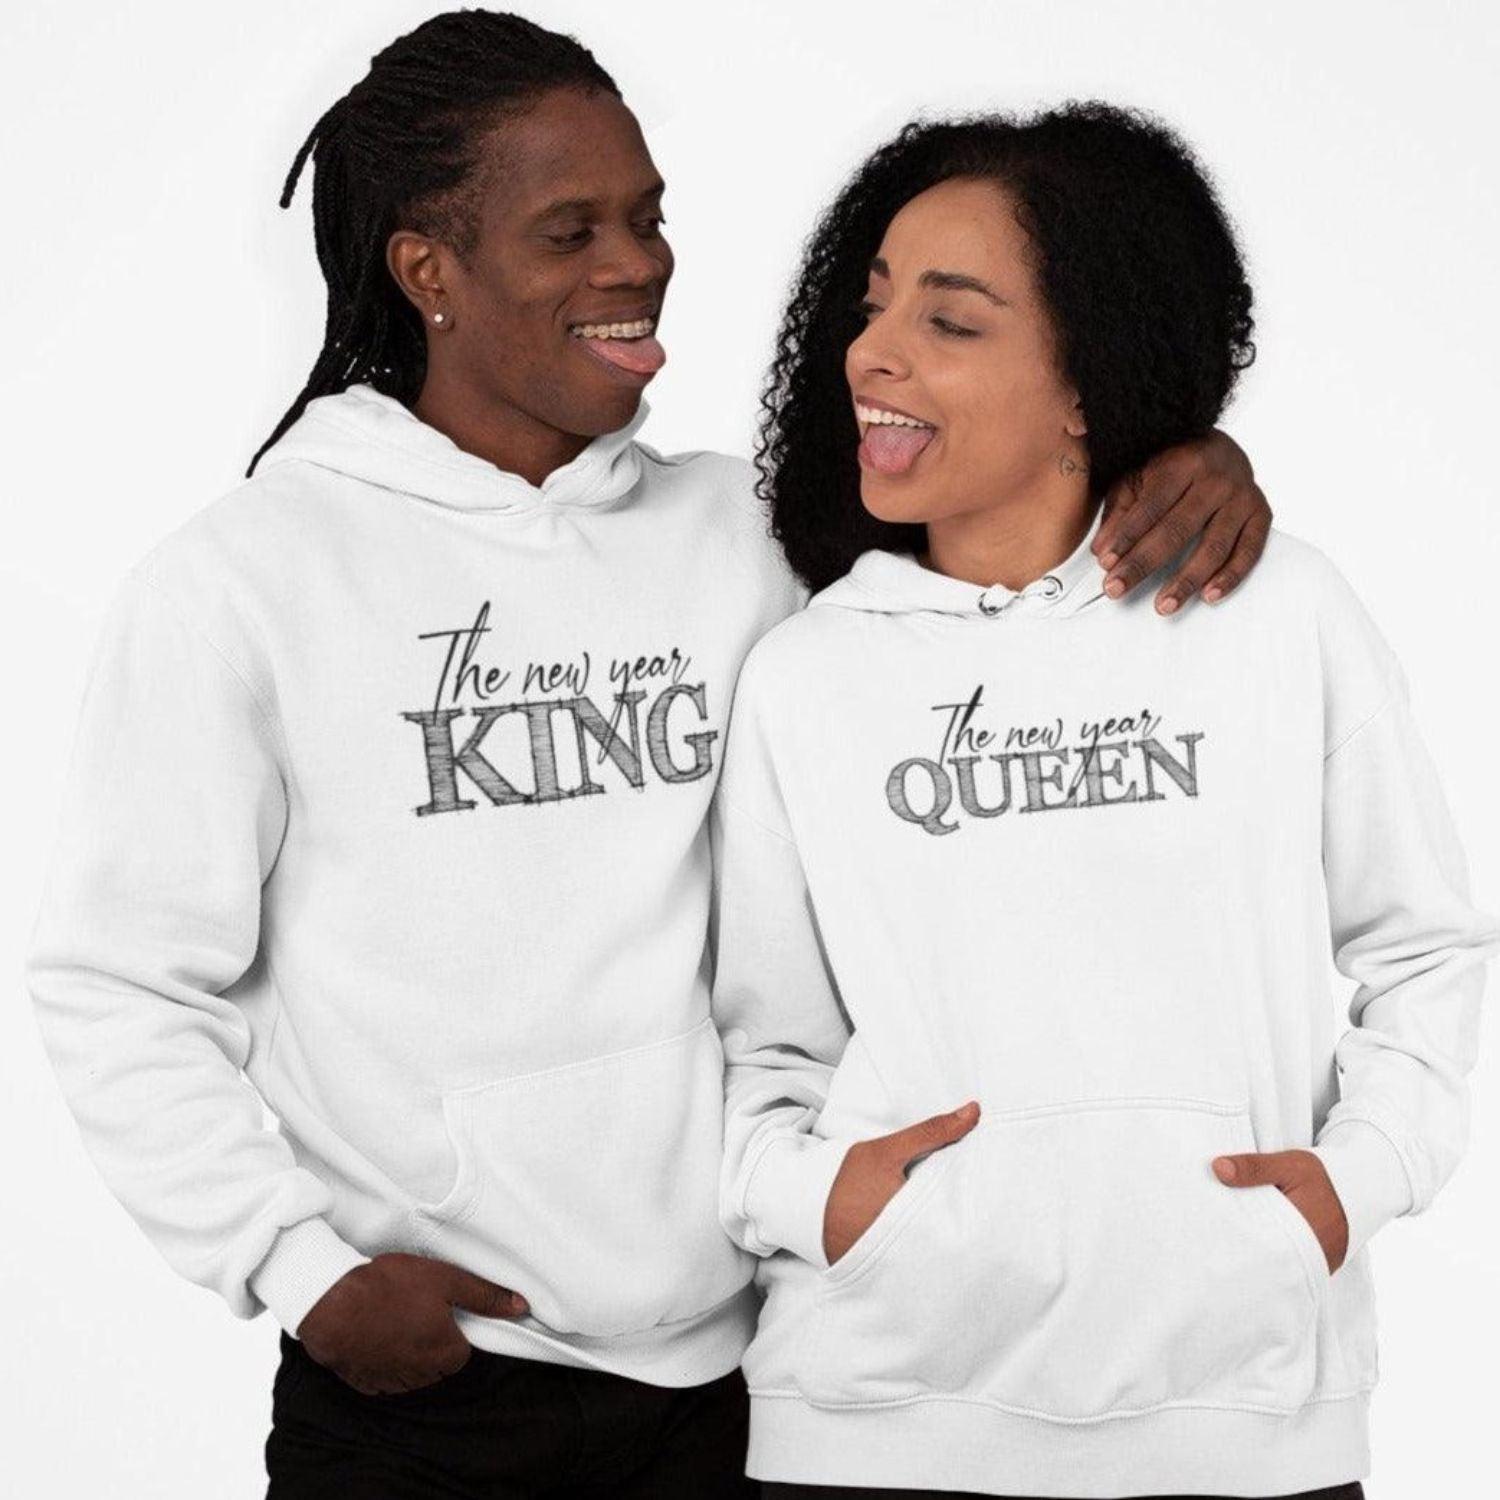 King & Queen Matching